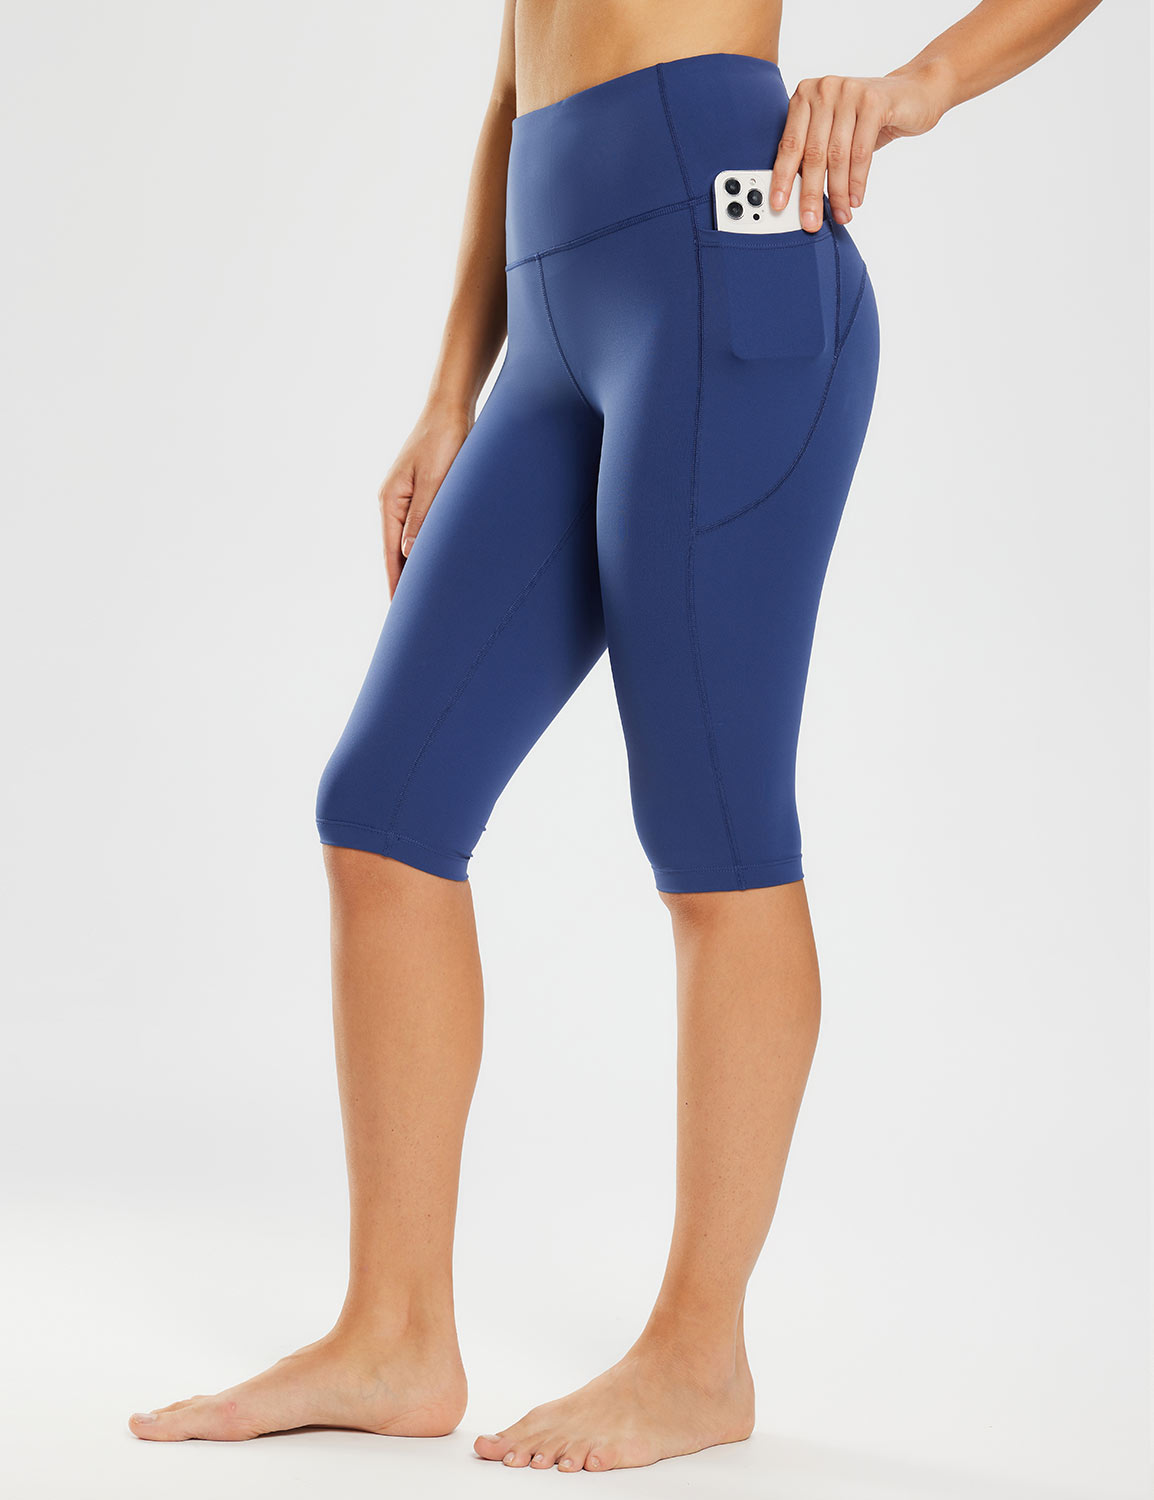 Baleaf Women's Sweatleaf Knee-Length Pocketed Capris ebh011 Estate Blue Side